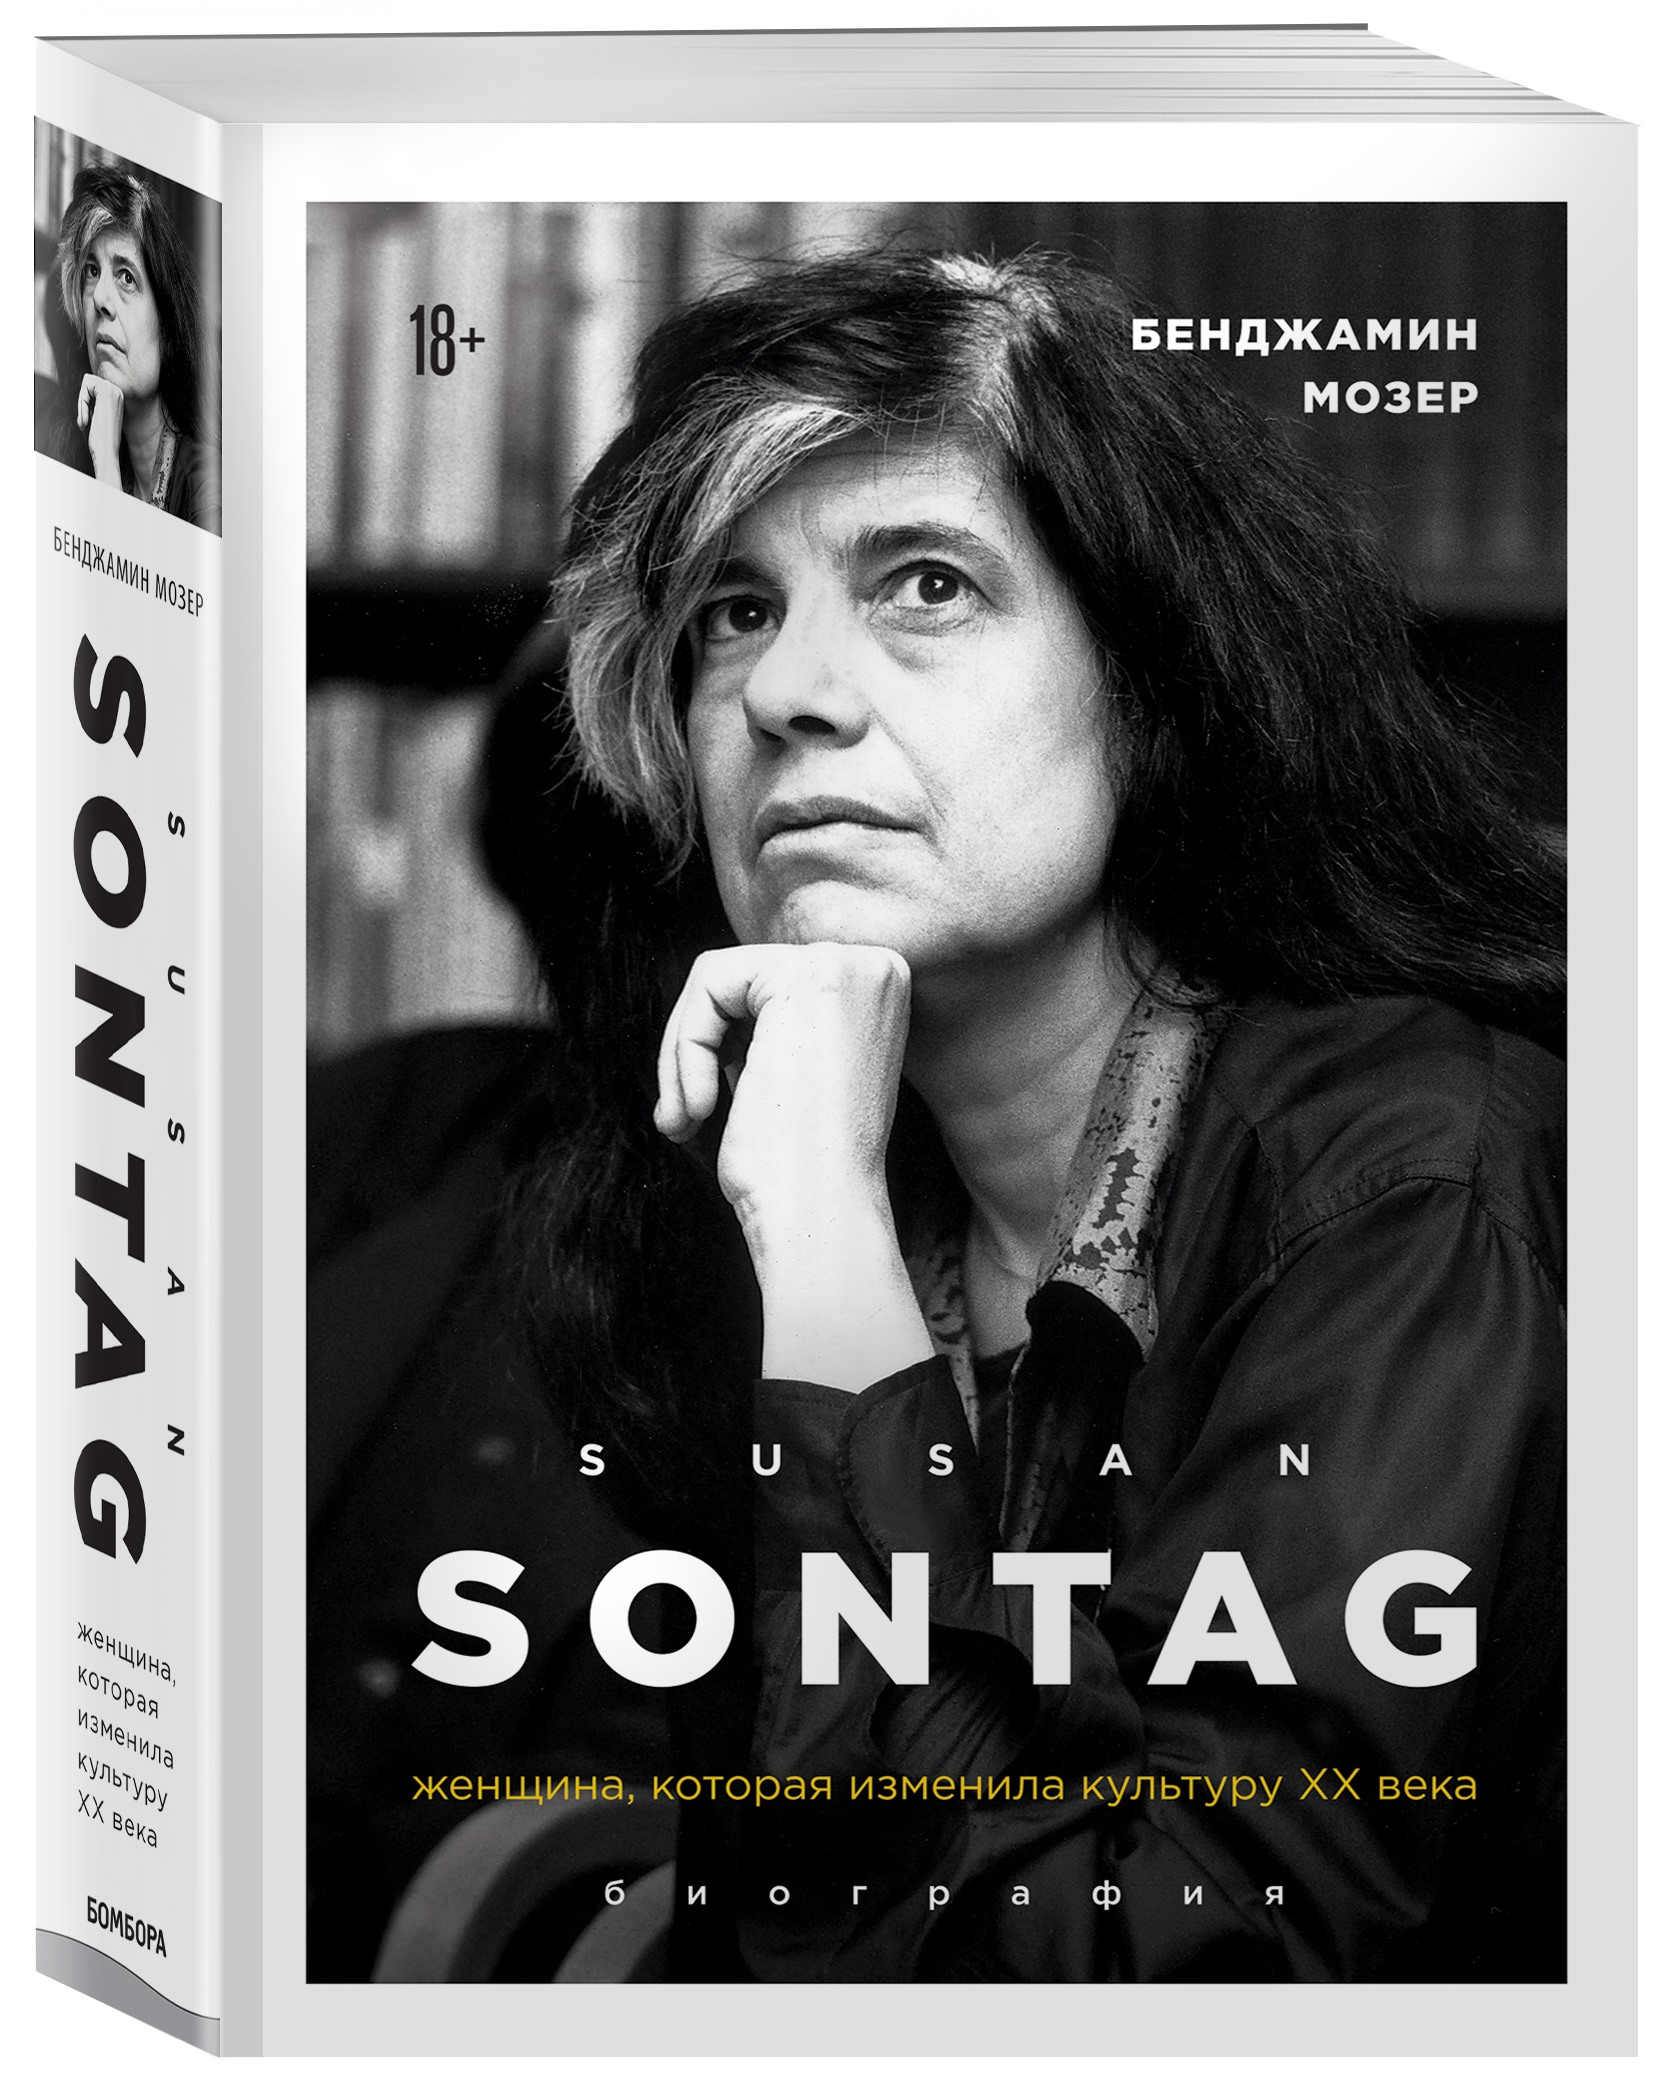 Обложка книги «Сьюзан Зонтаг. Женщина, которая изменила культуру ХХ века»